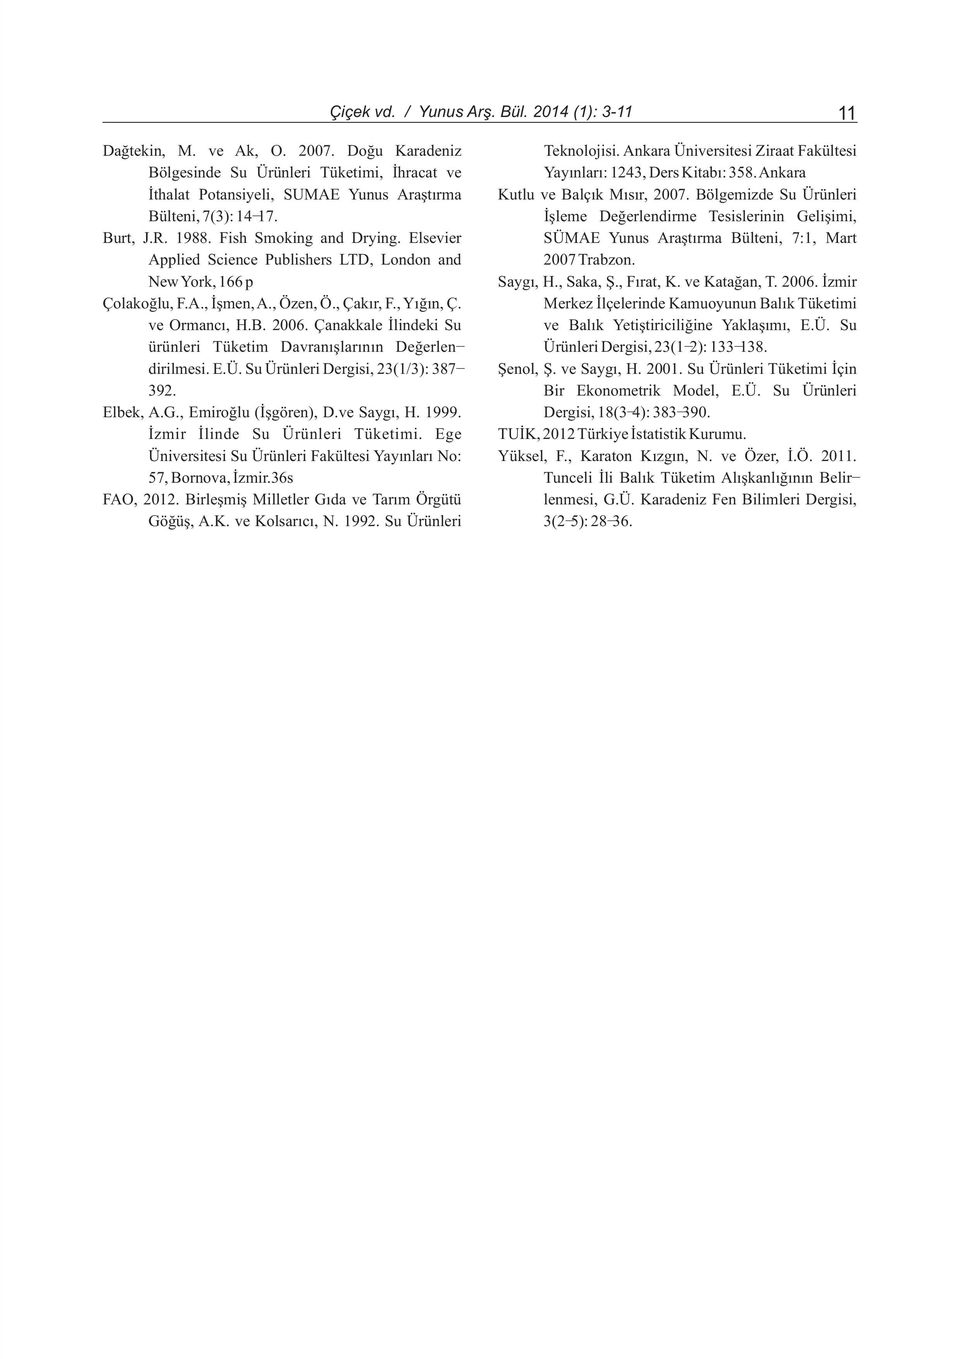 Bölgemizde Su Ürünleri Bülteni, 7(3): 14-17. Ýþleme Deðerlendirme Tesislerinin Geliþimi, Burt, J.R. 1988. Fish Smoking and Drying.